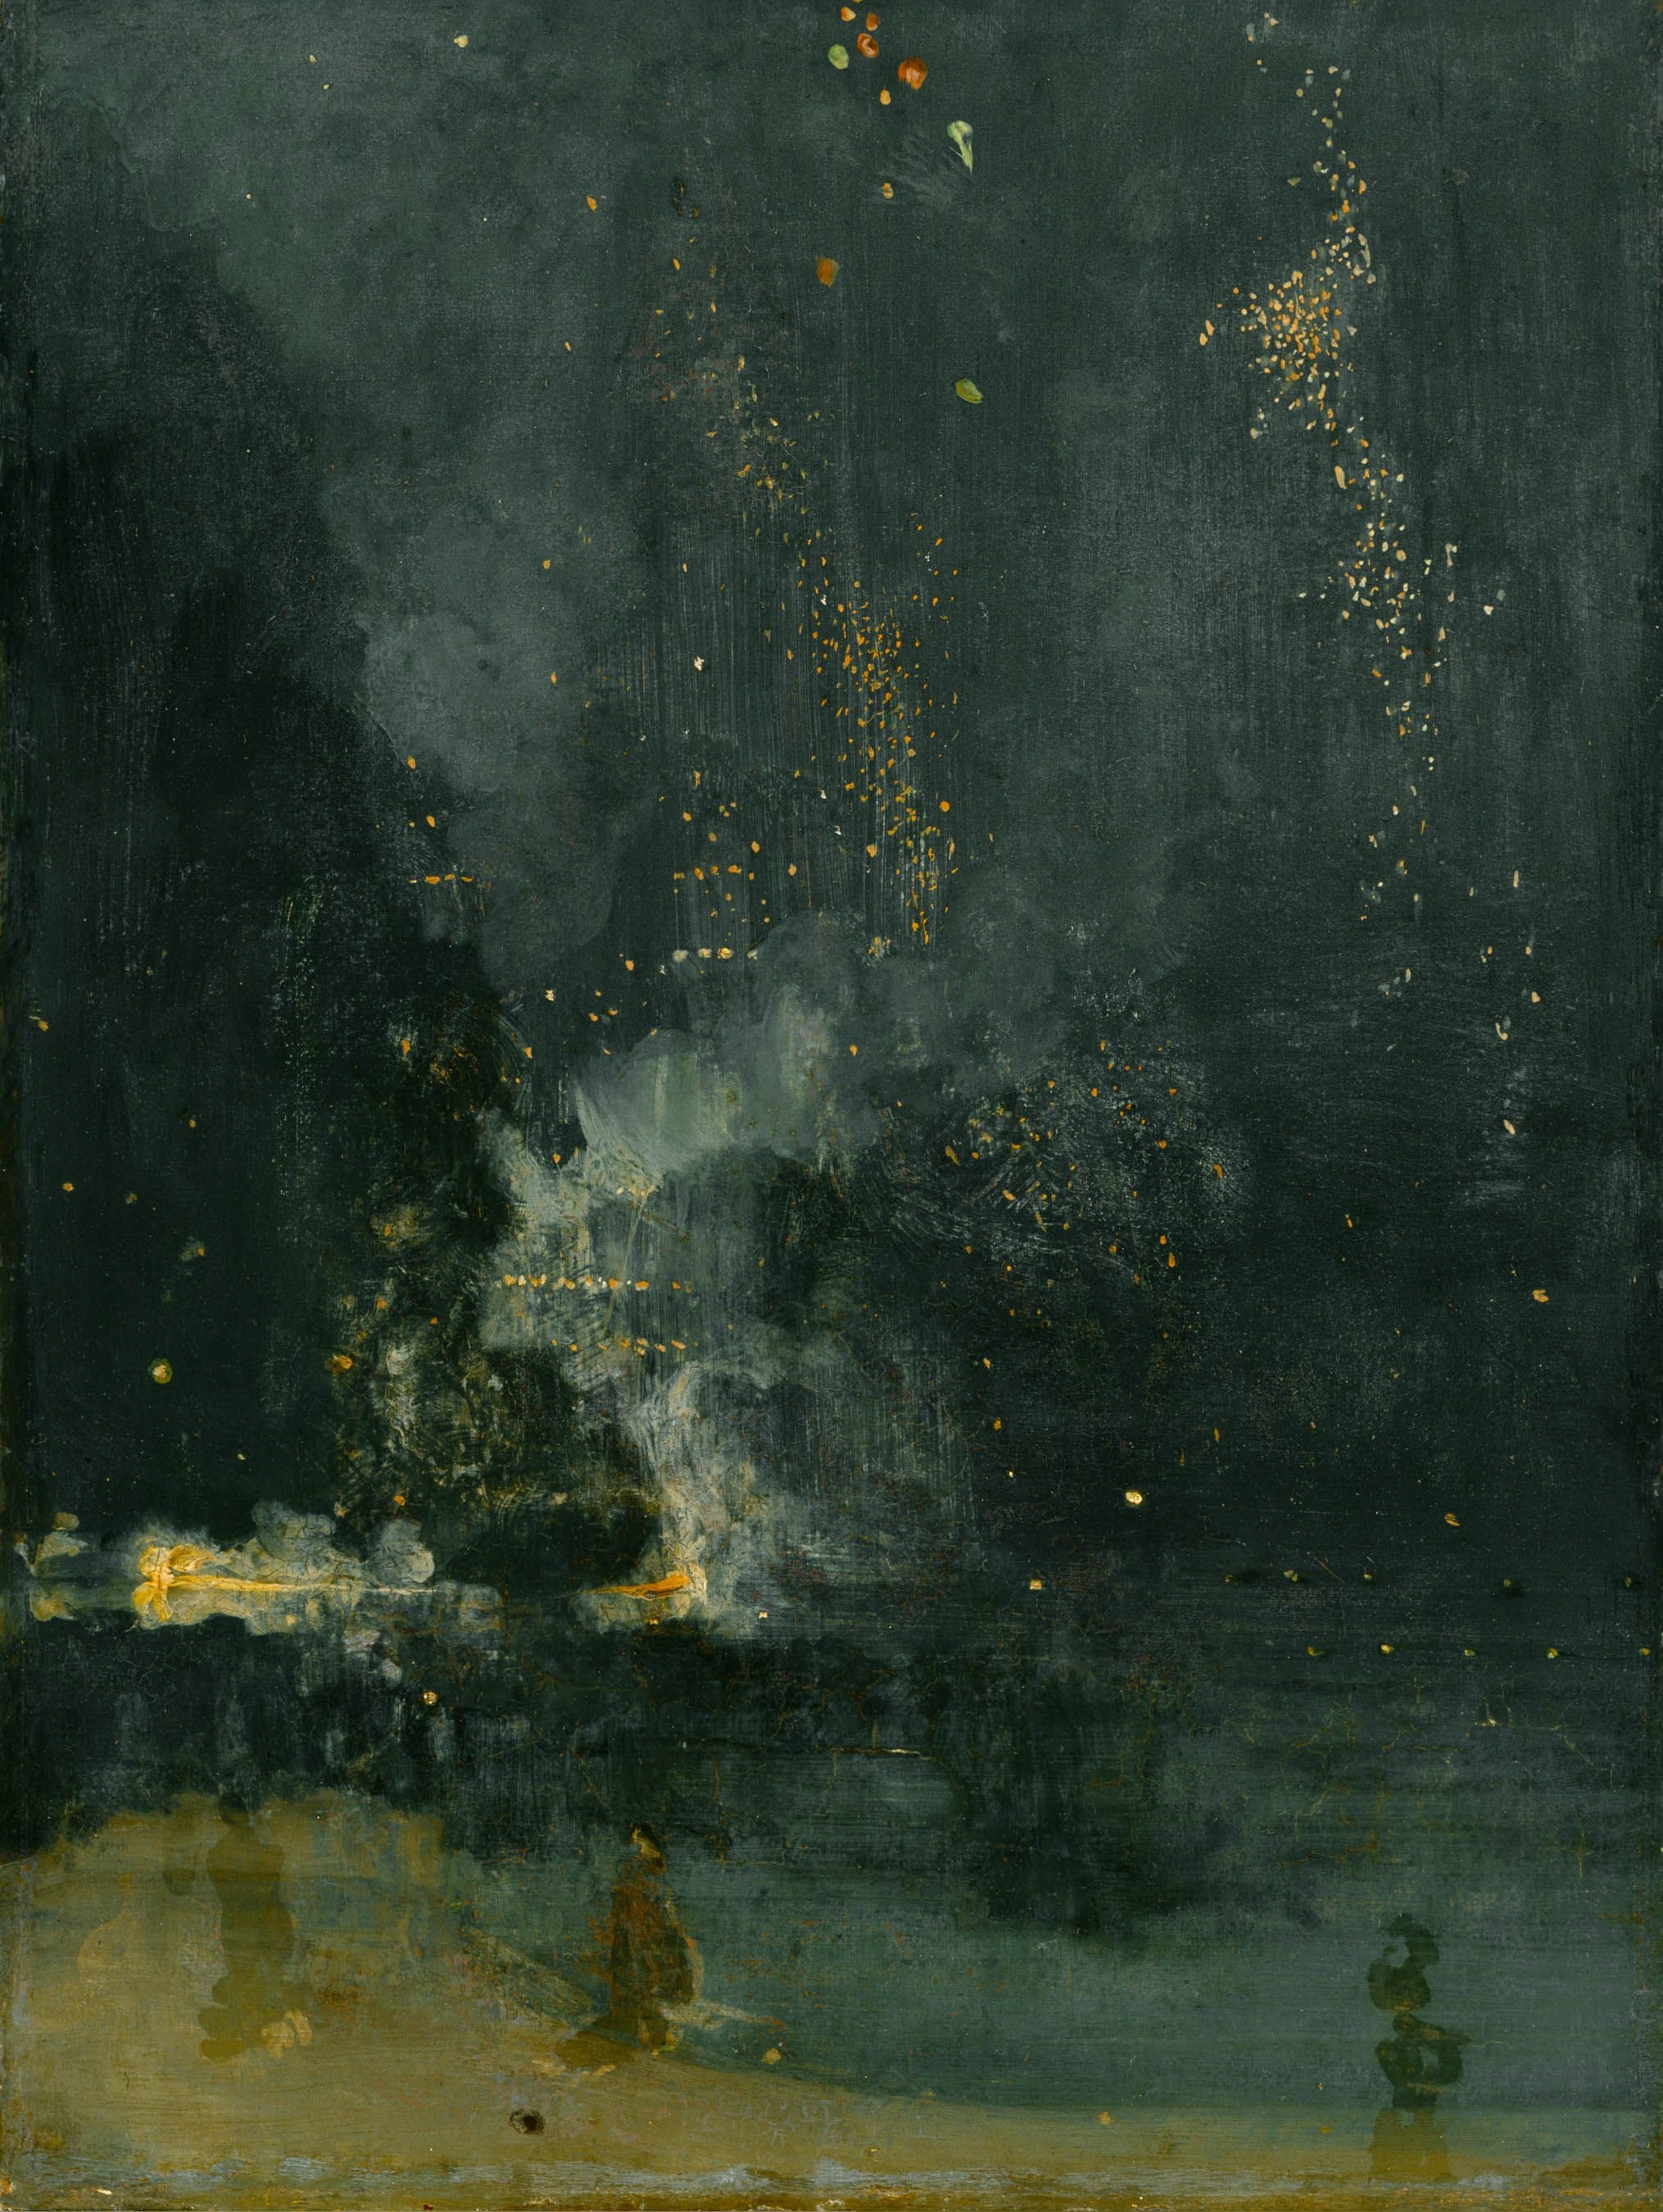 黑色与金色的夜曲 by 詹姆斯· 艾博特·麦克尼尔·惠斯勒 - circa 1872–77 - 60.3 × 46.6 cm 底特律美术馆